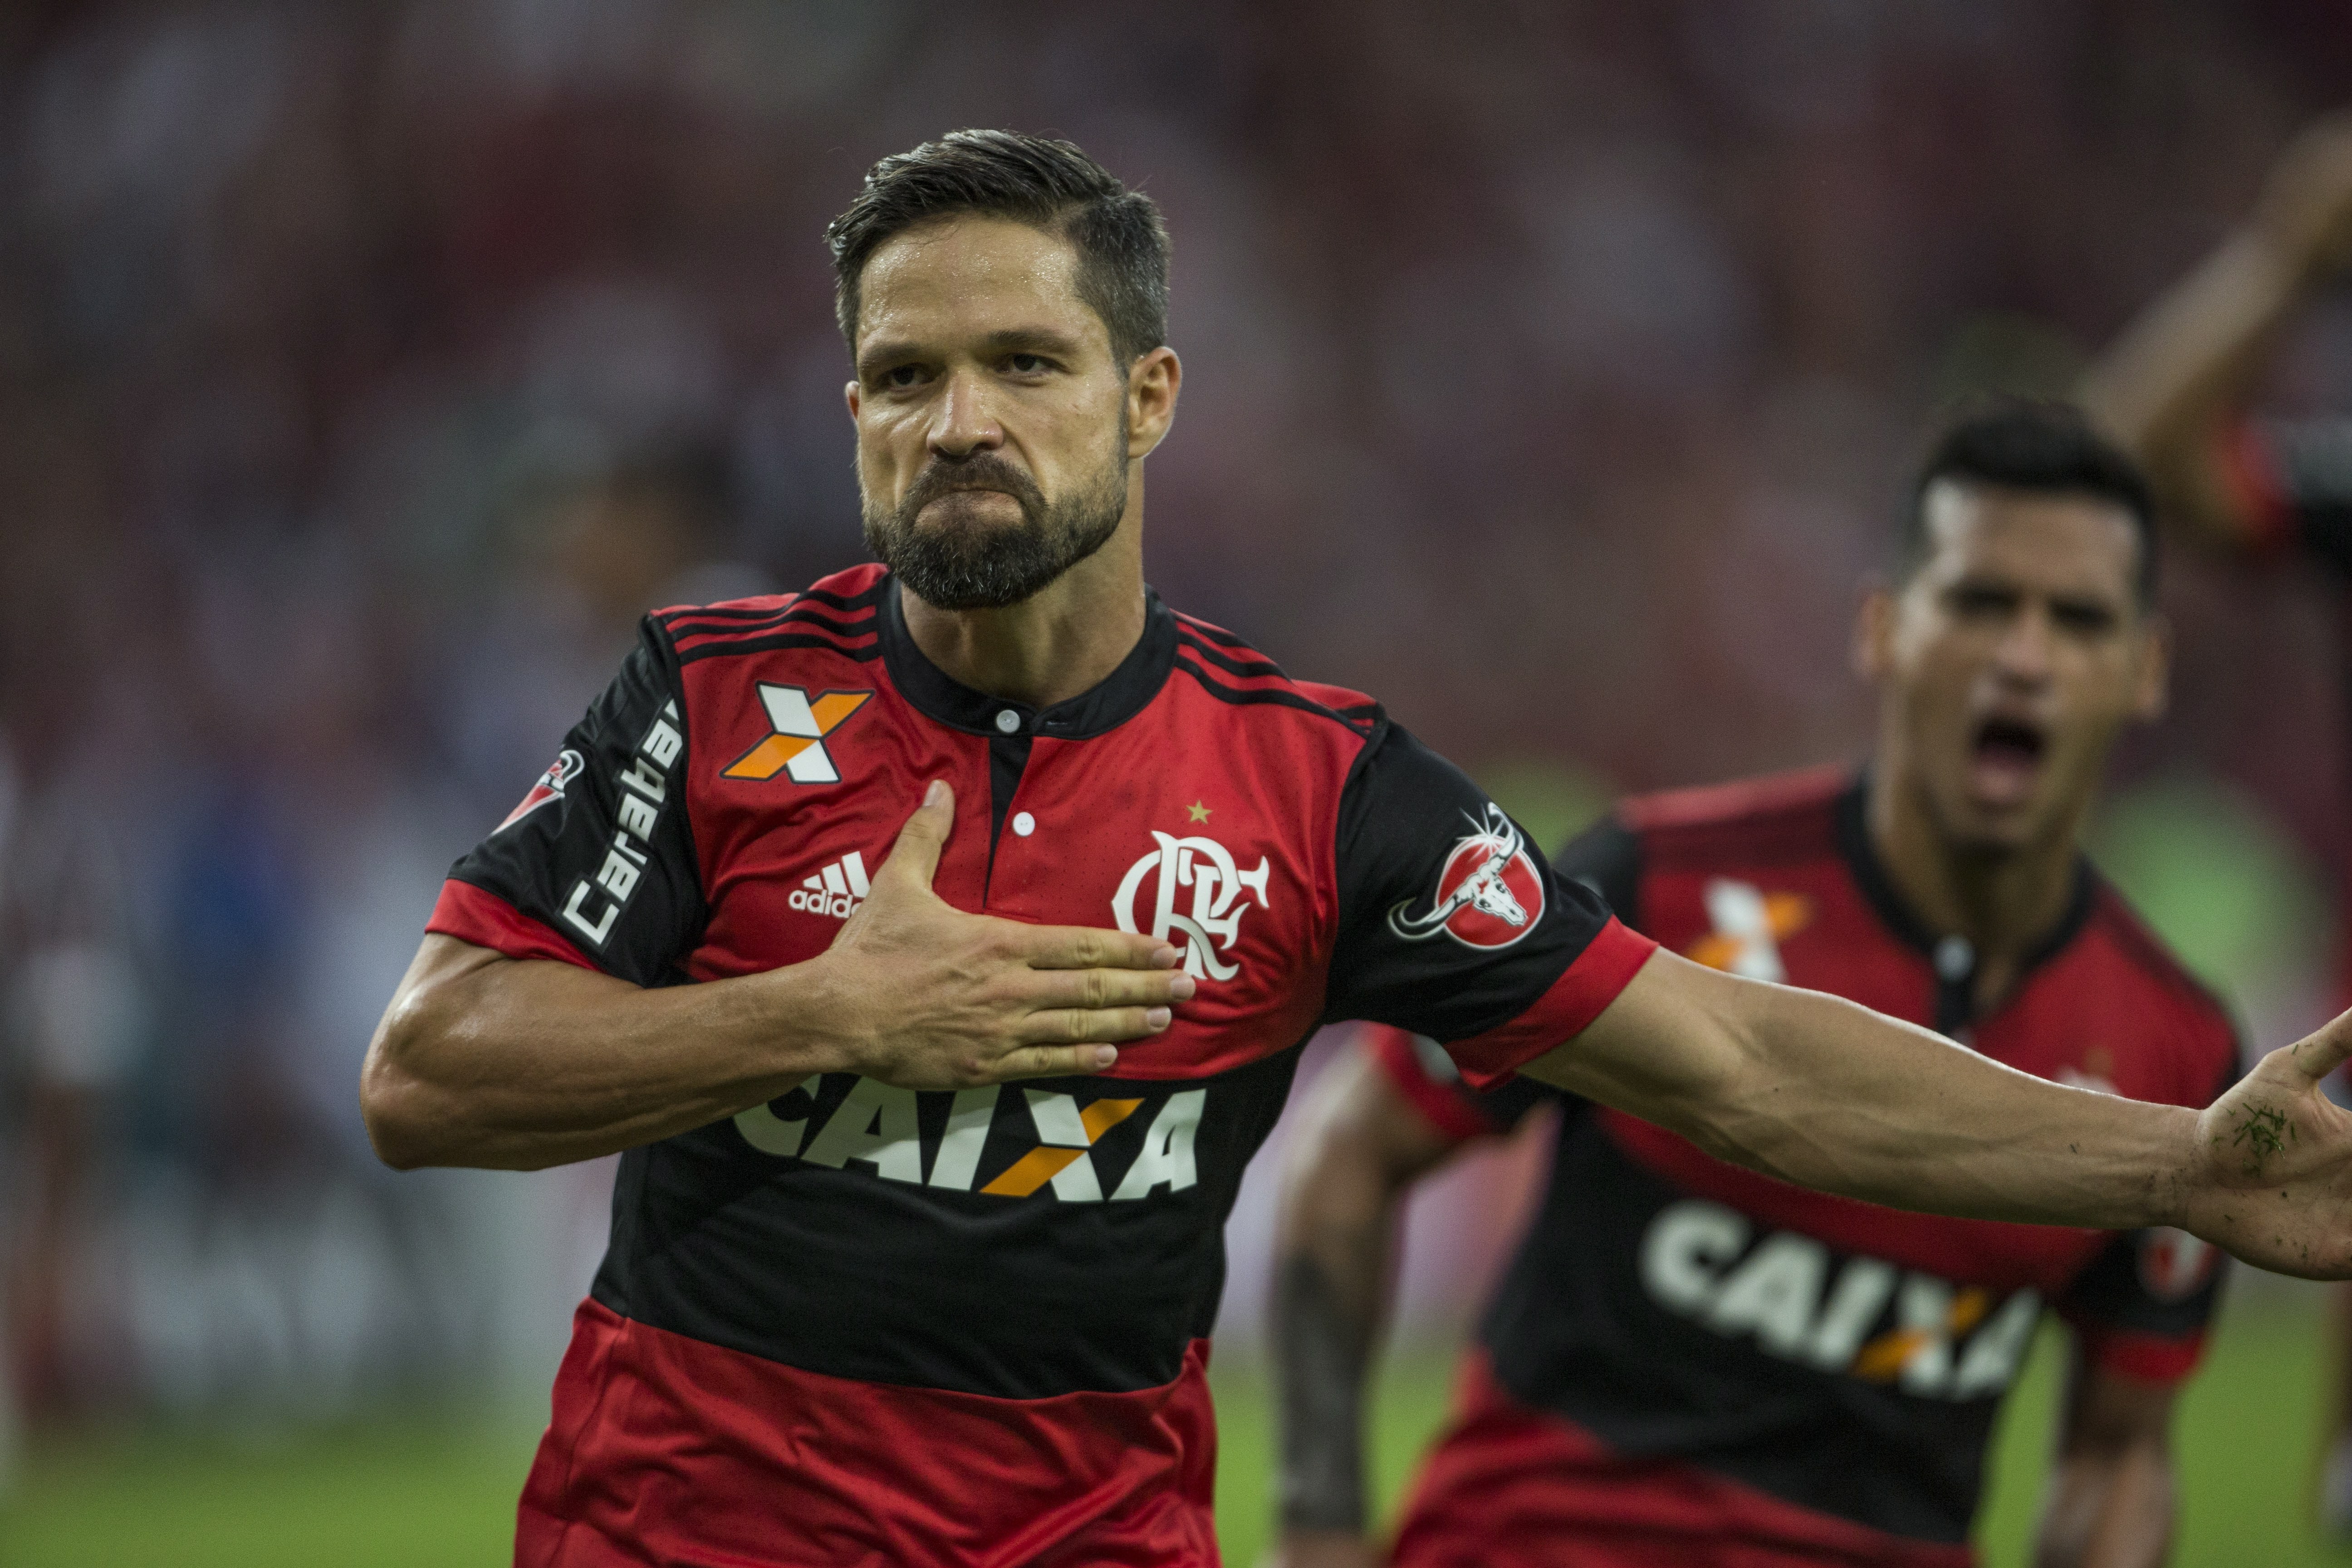 O patrocínio da Carabao, nas mangas da camisa do Flamengo